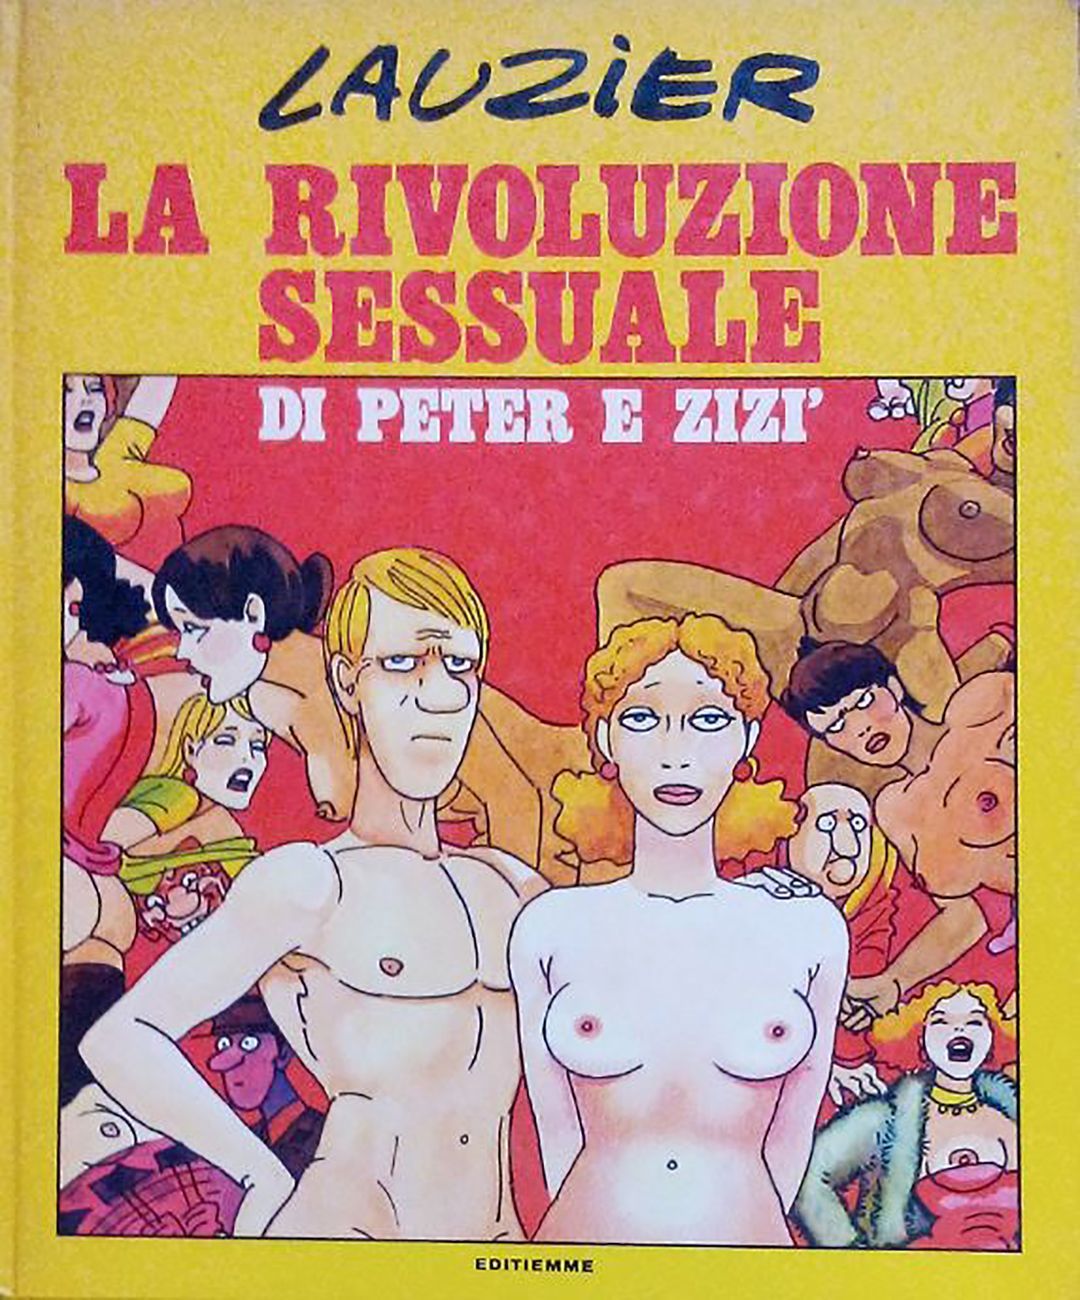 Lauzier, La rivoluzione sessuale di Peter e Zizi, 1980